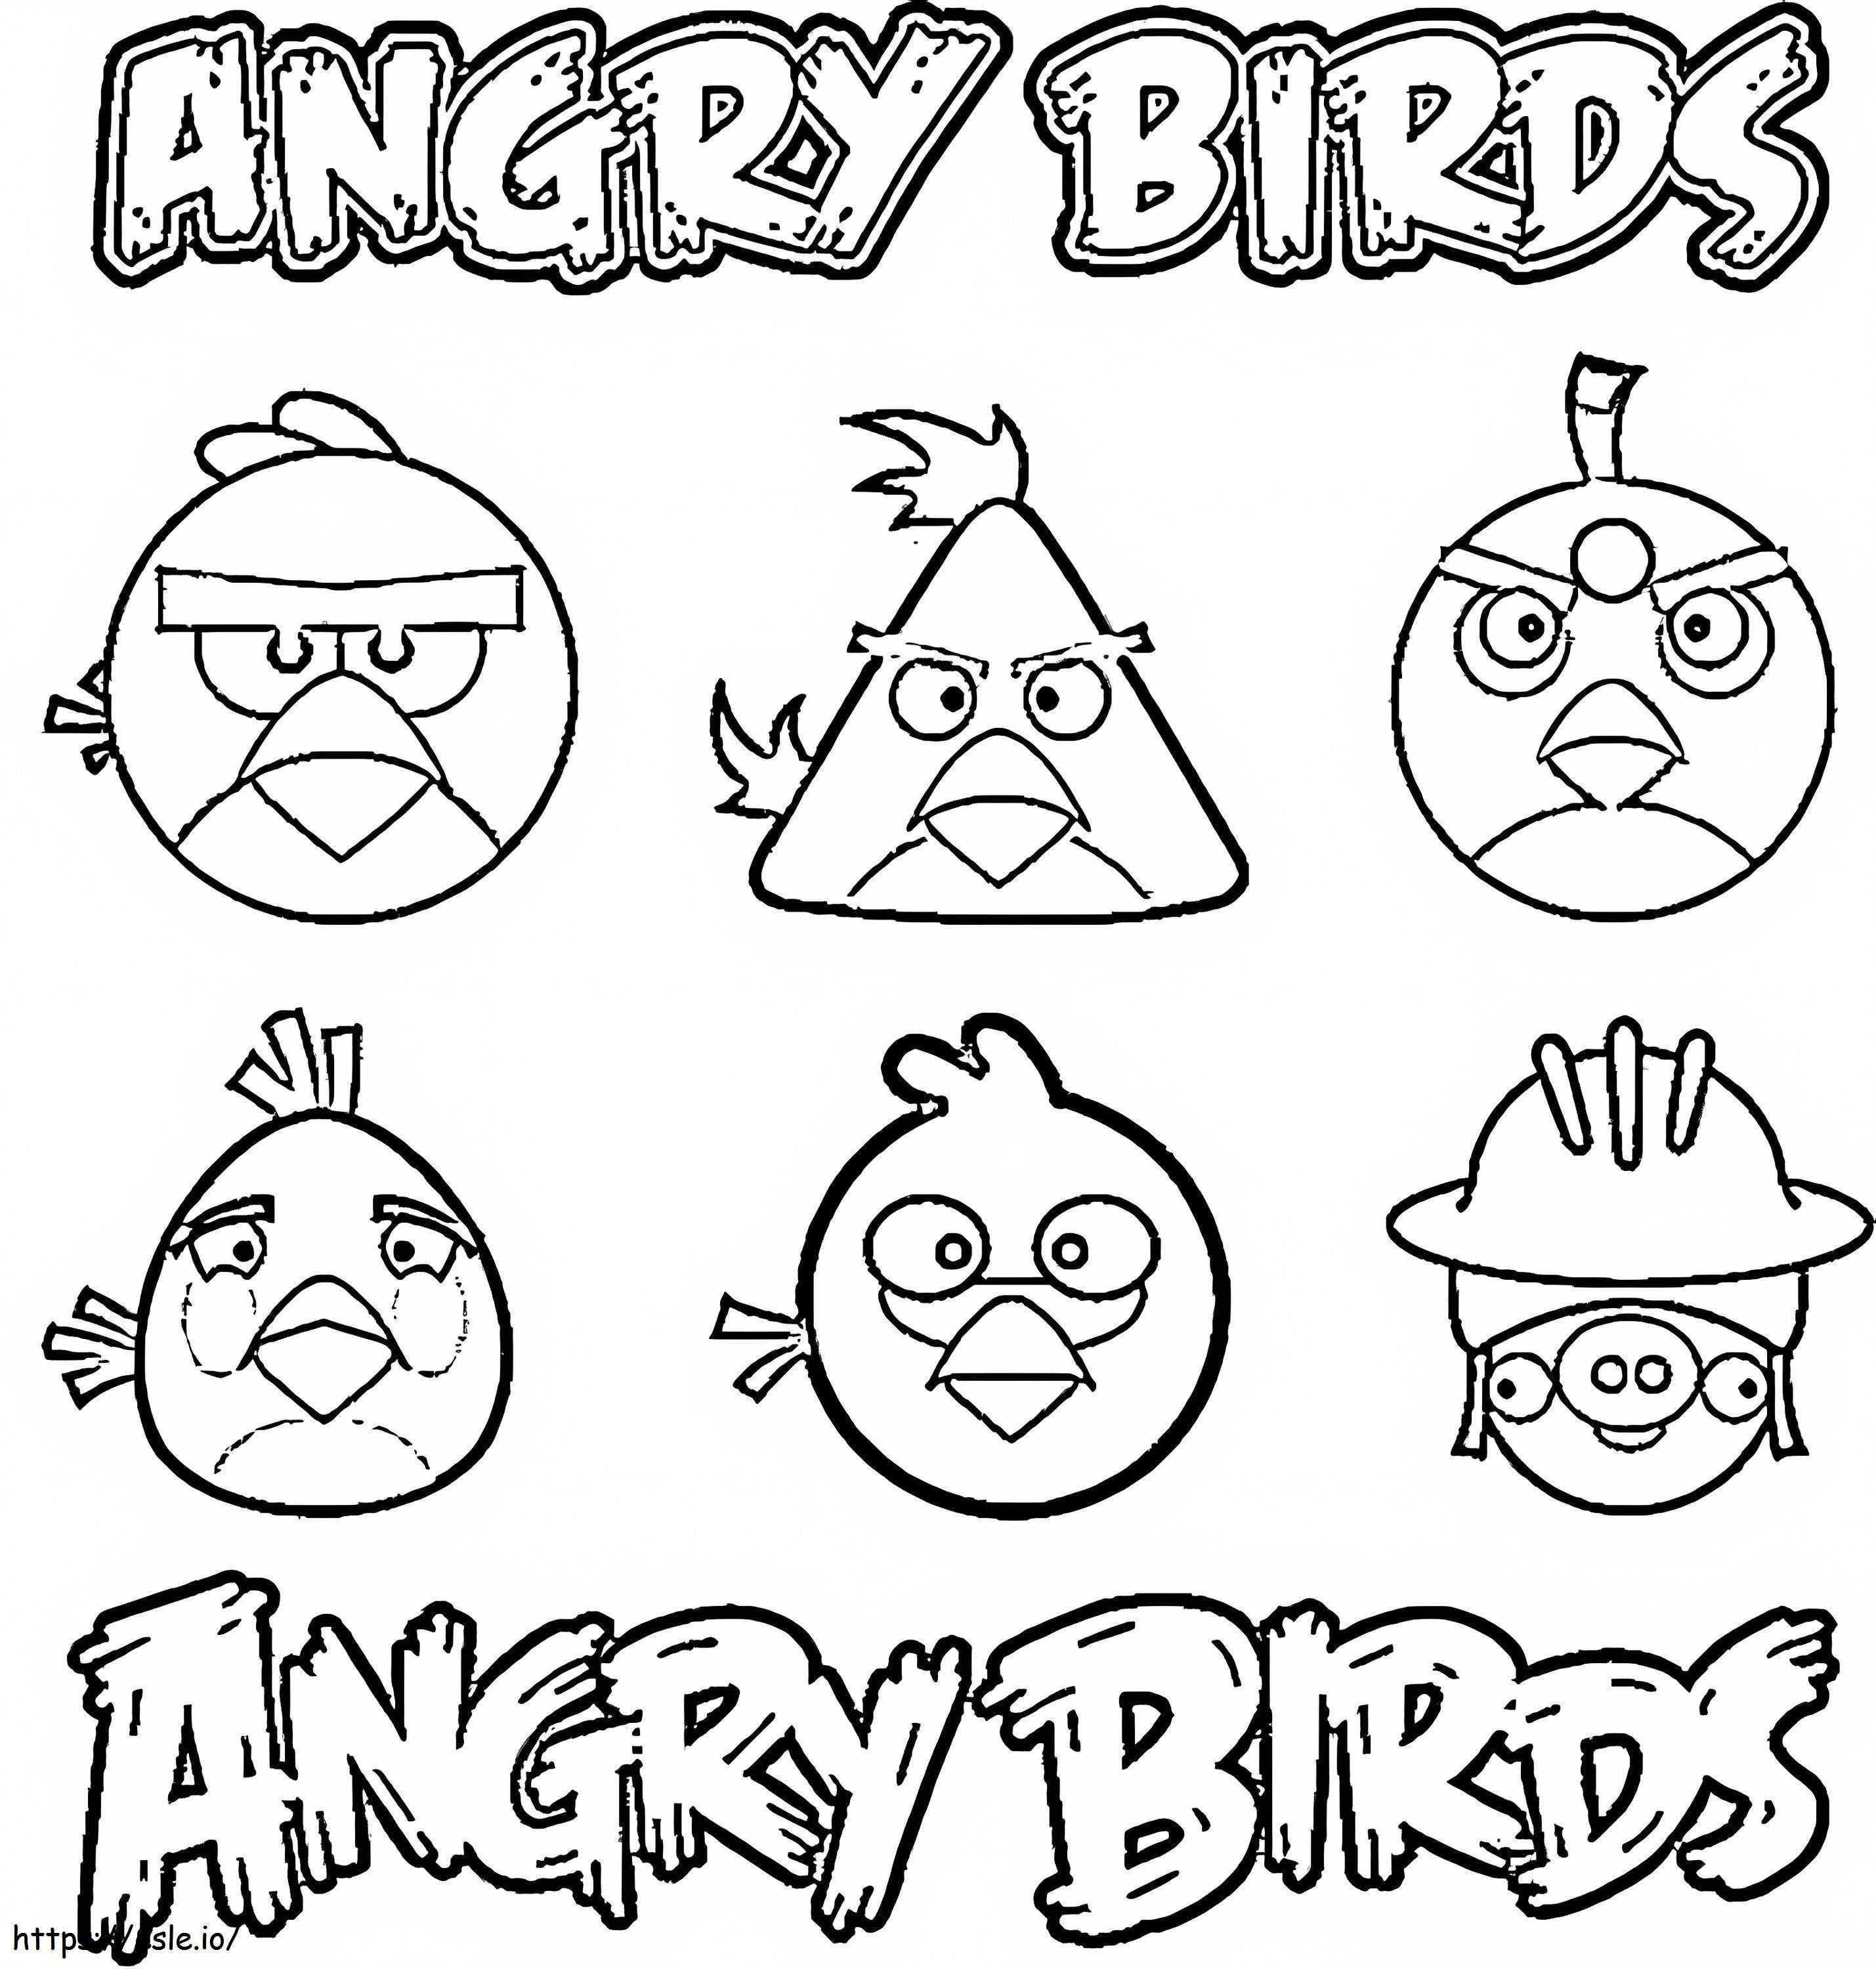 Podstawowe gry Angry Birds kolorowanka